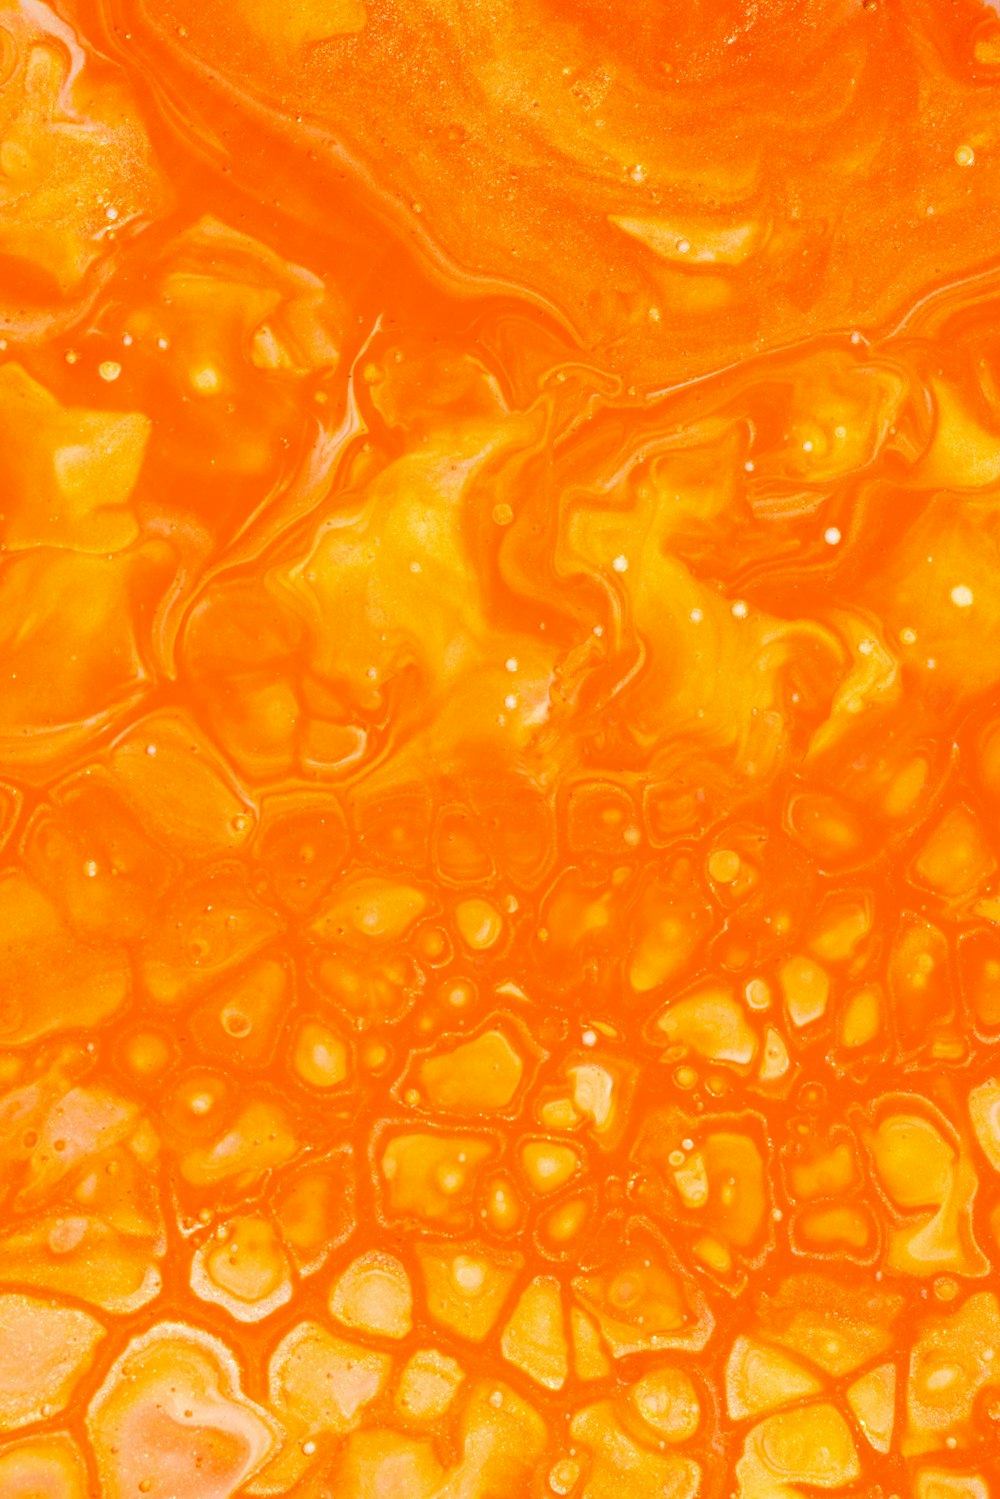 투명 유리에 있는 주황색 액체